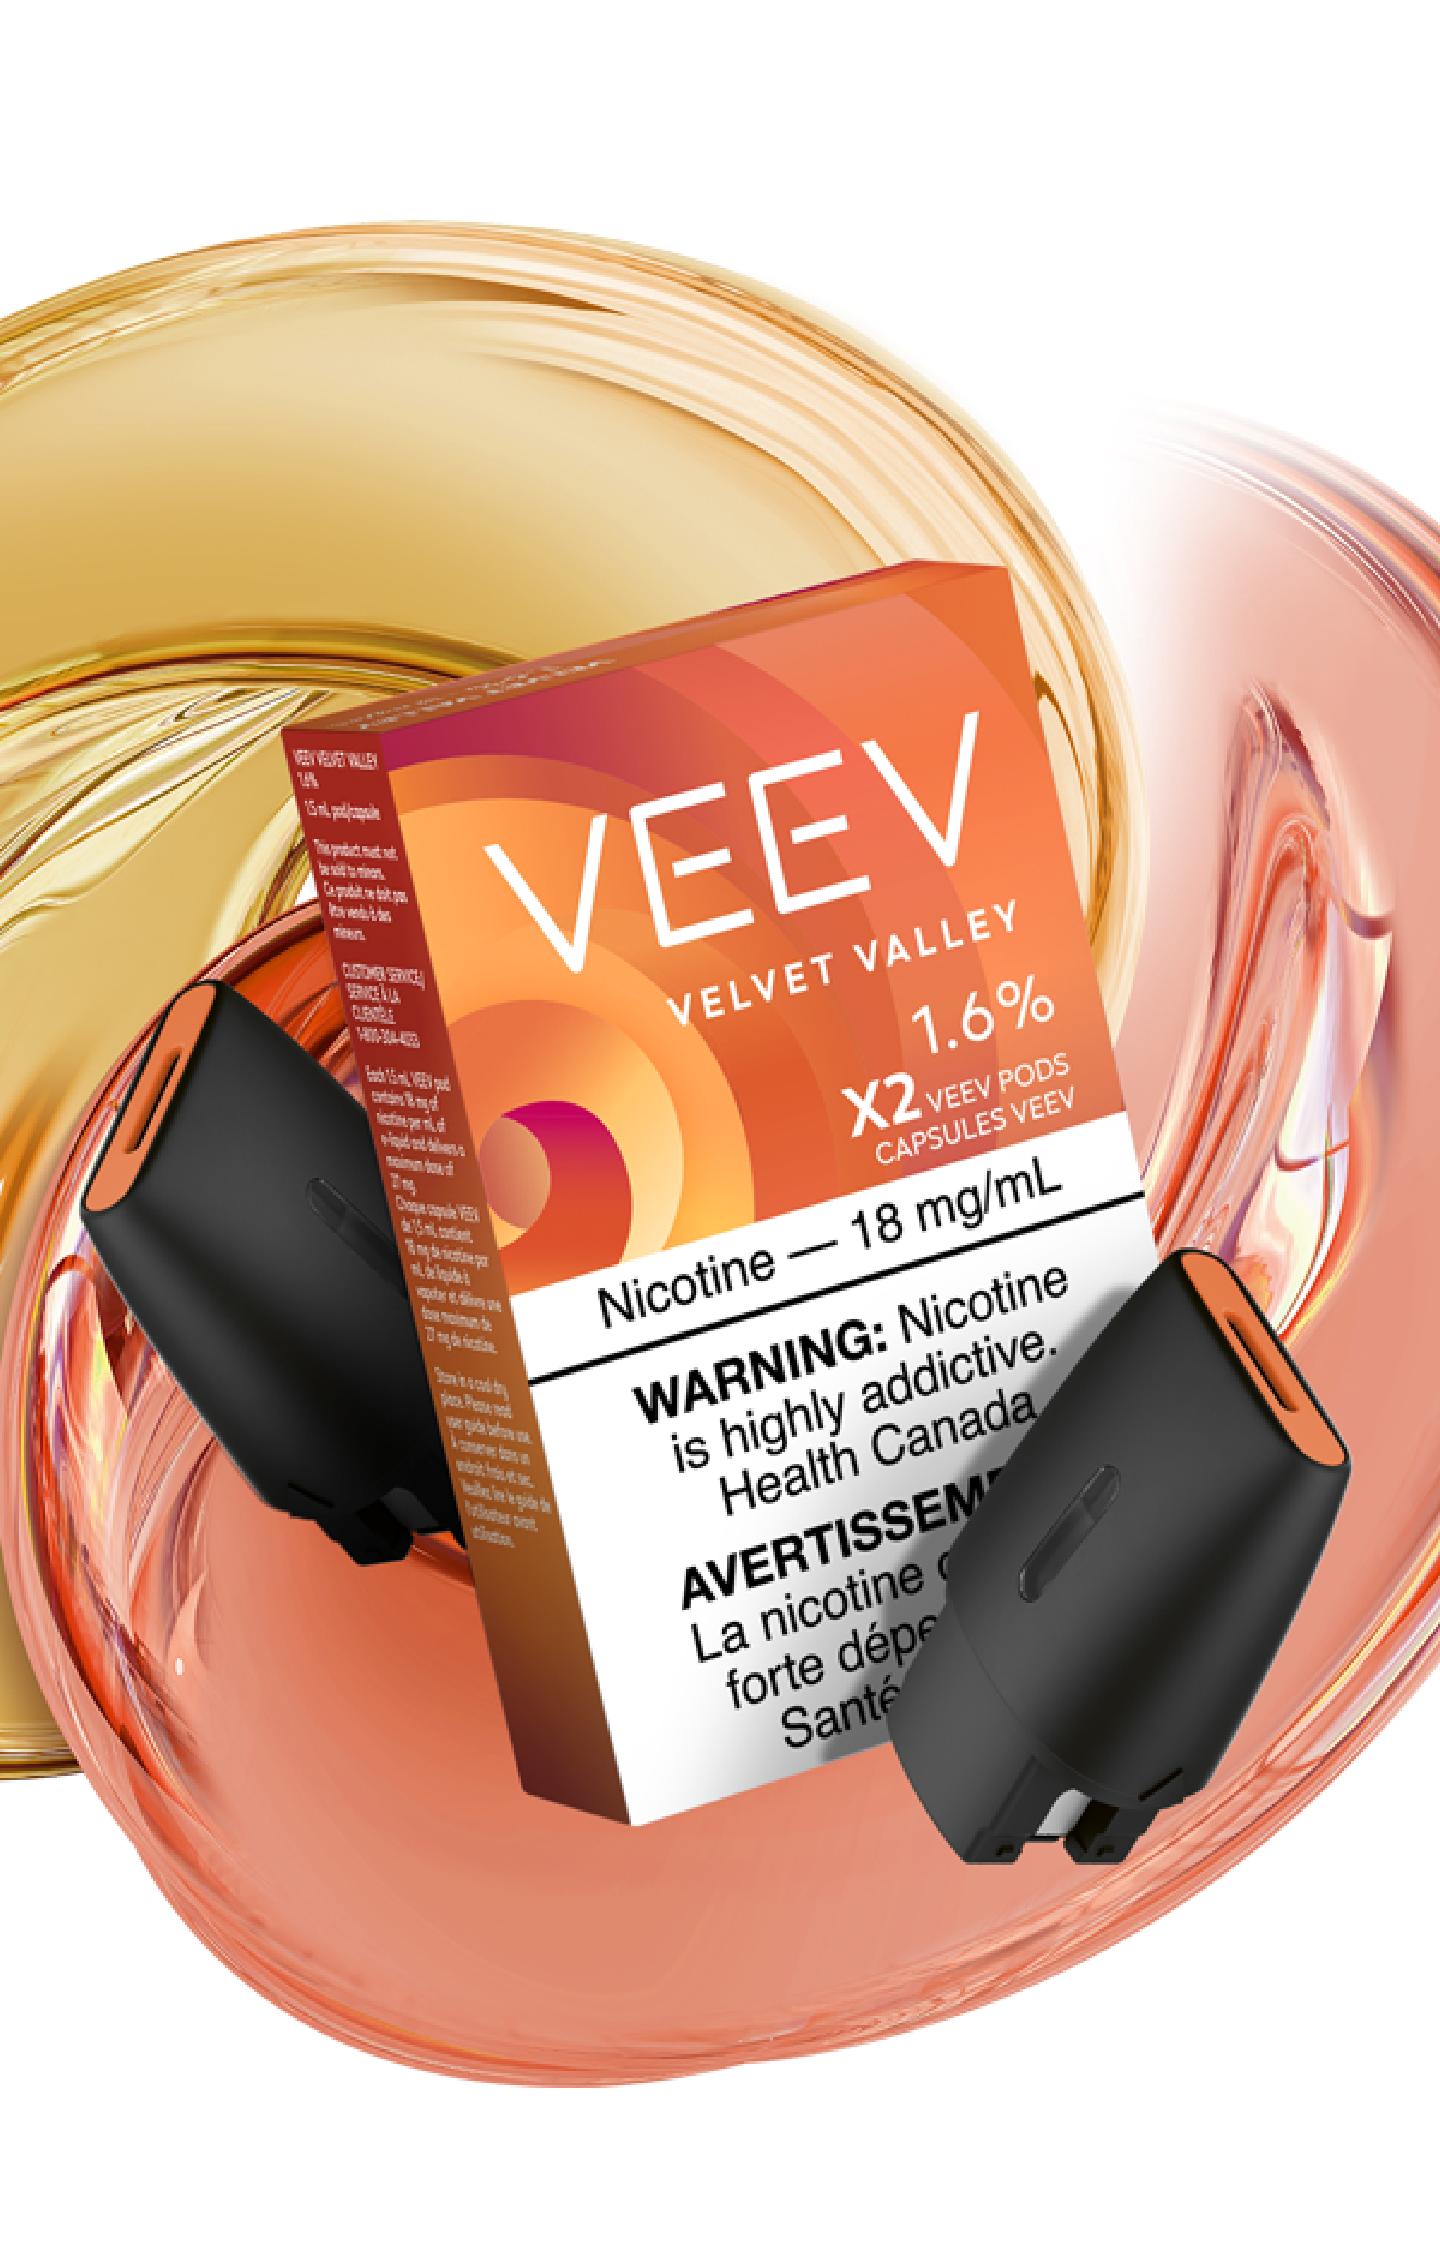 Velvet Valley pack + 2 pods + swirl